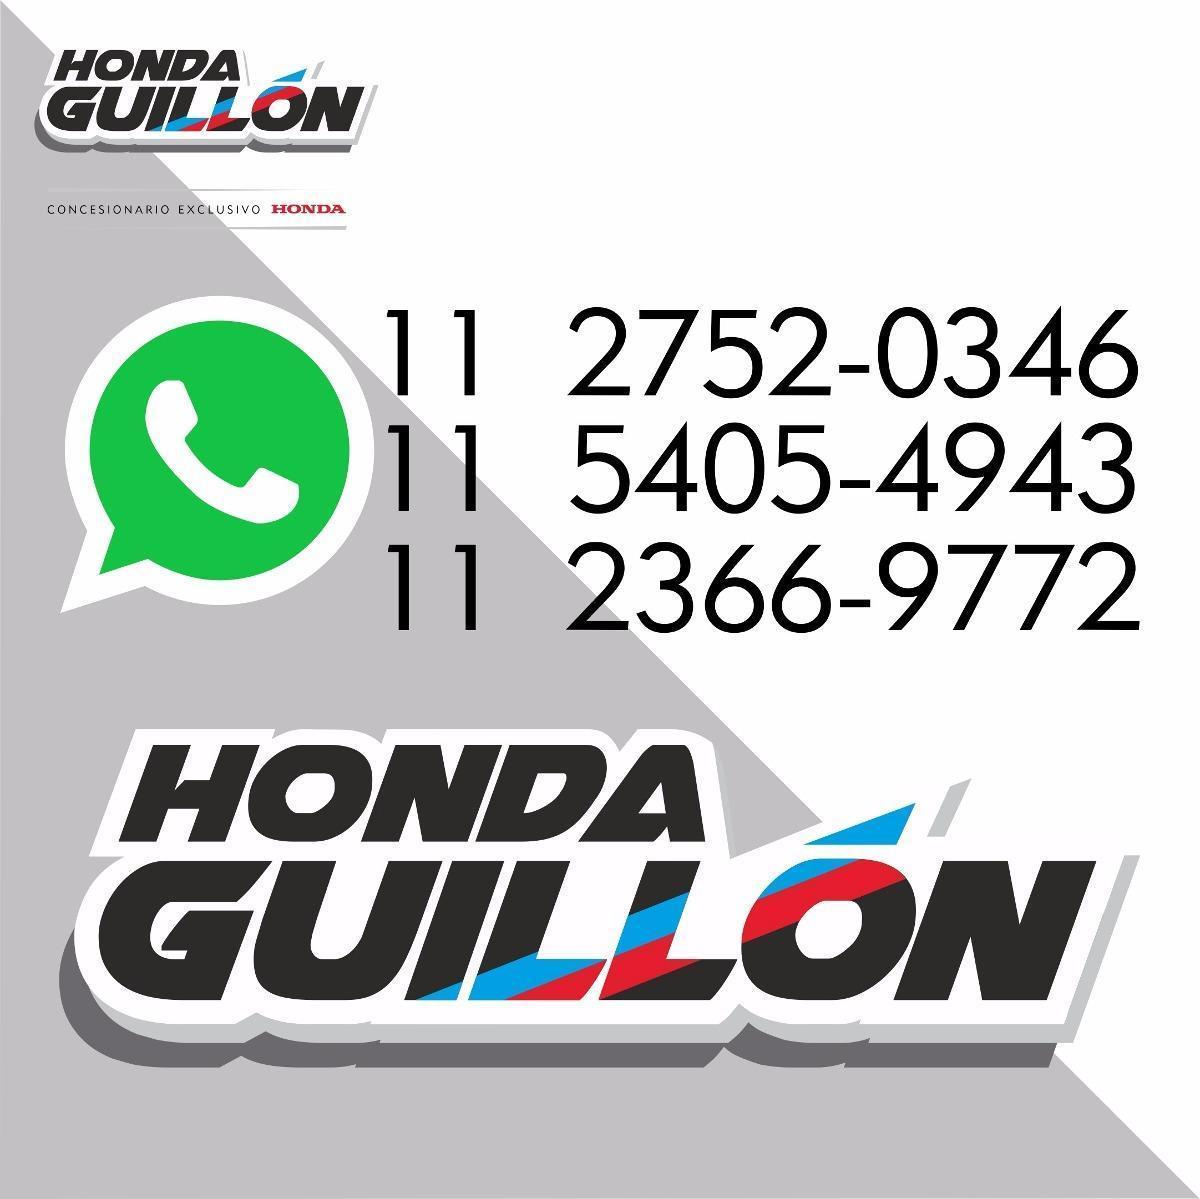 Honda Elite 125 Garantía Extendida 3 Años Honda Guillon